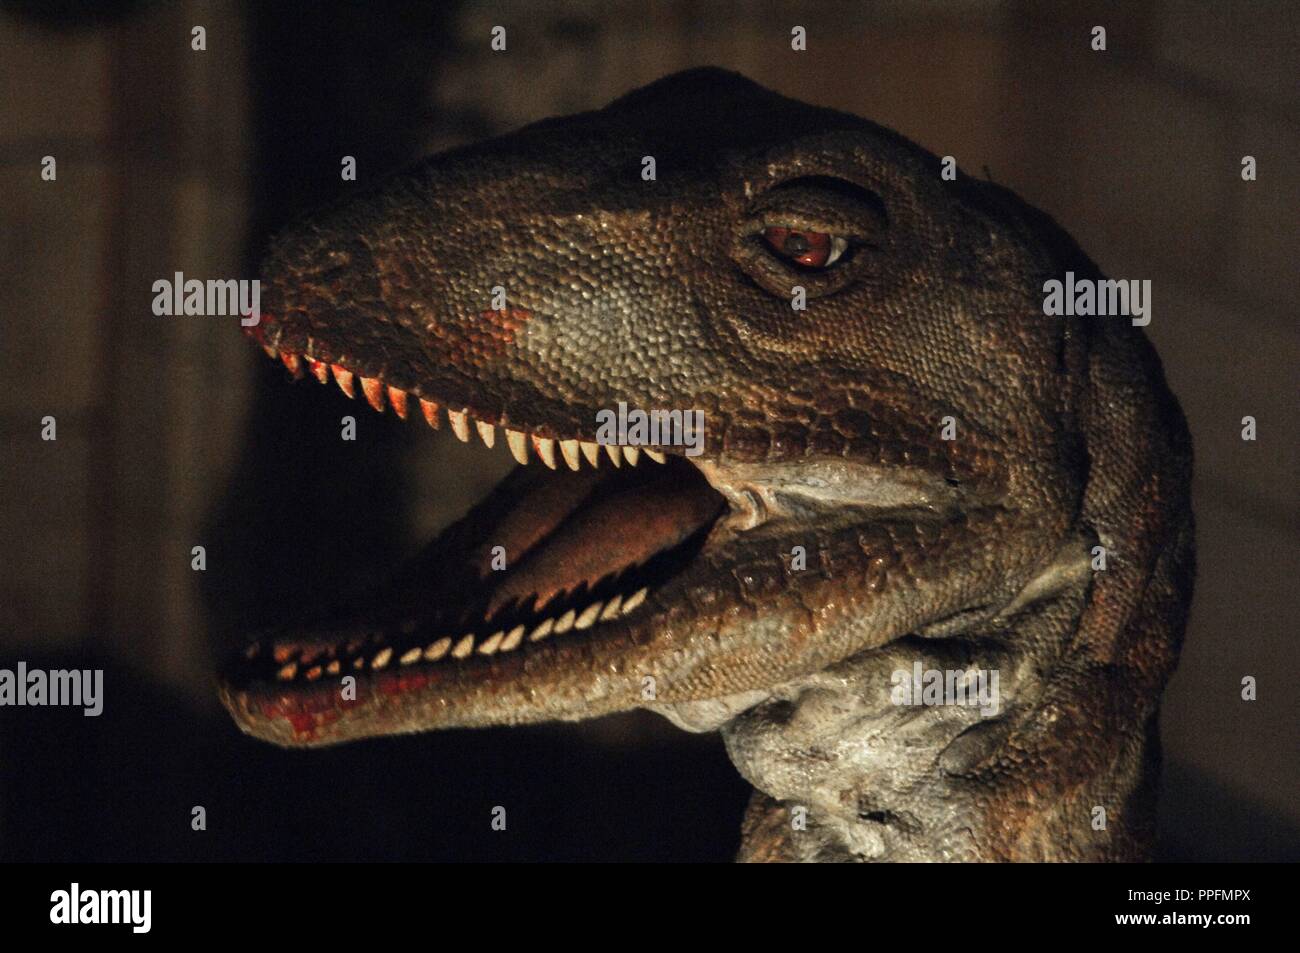 Reproduktion eines Deinonychus (Deinonychus antirrhopus). Untere Kreidezeit. 119-97 Millionen Jahren. Den Kopf detail. Natural History Museum. London. Vereinigtes Königreich. Stockfoto